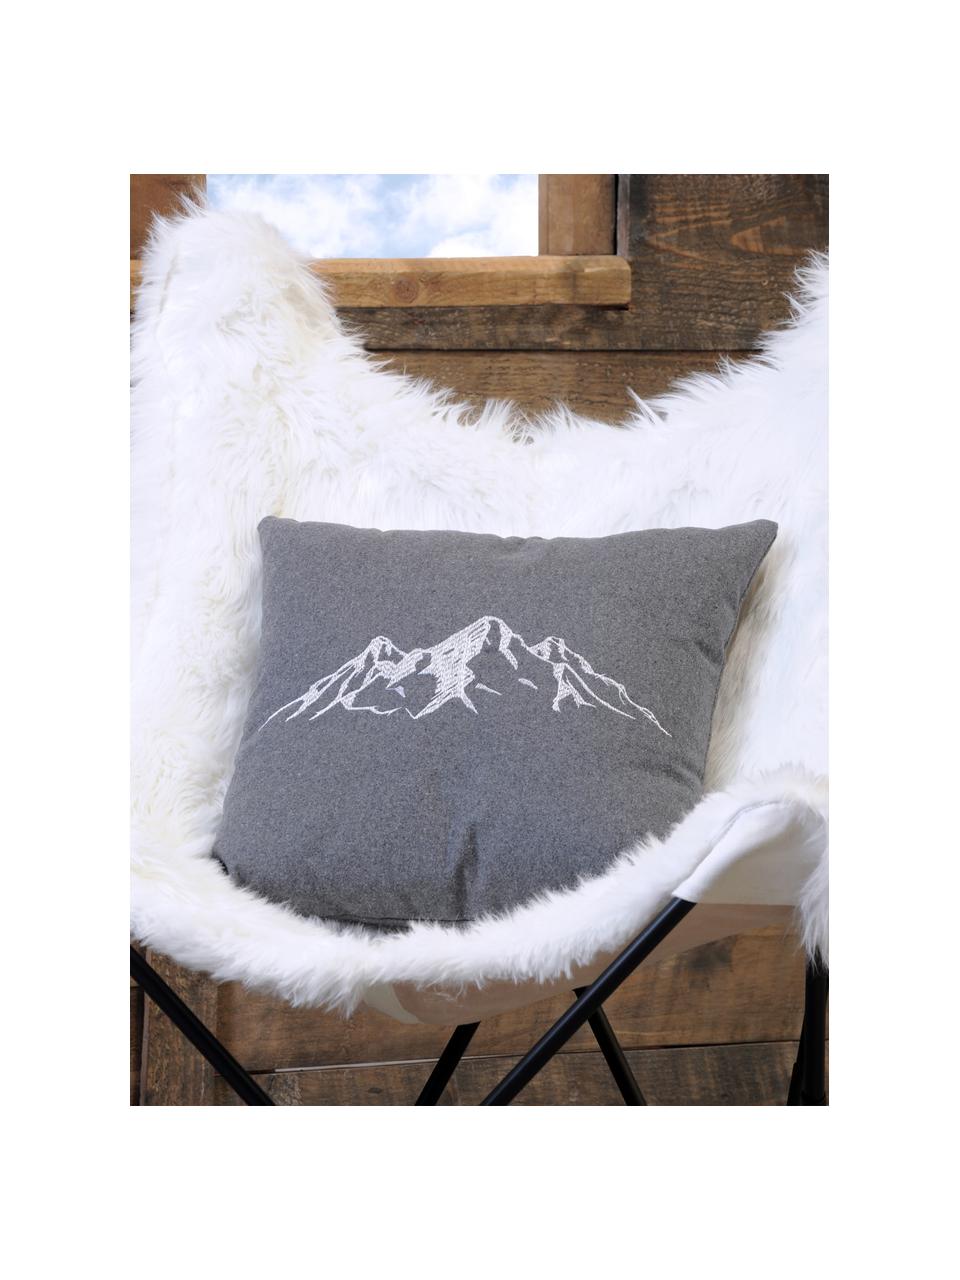 Kissen Charvin in Grau mit Bergmotiv, mit Inlett, Bezug: 95% Polyester, 5% Wolle, Grau, B 45 x L 45 cm